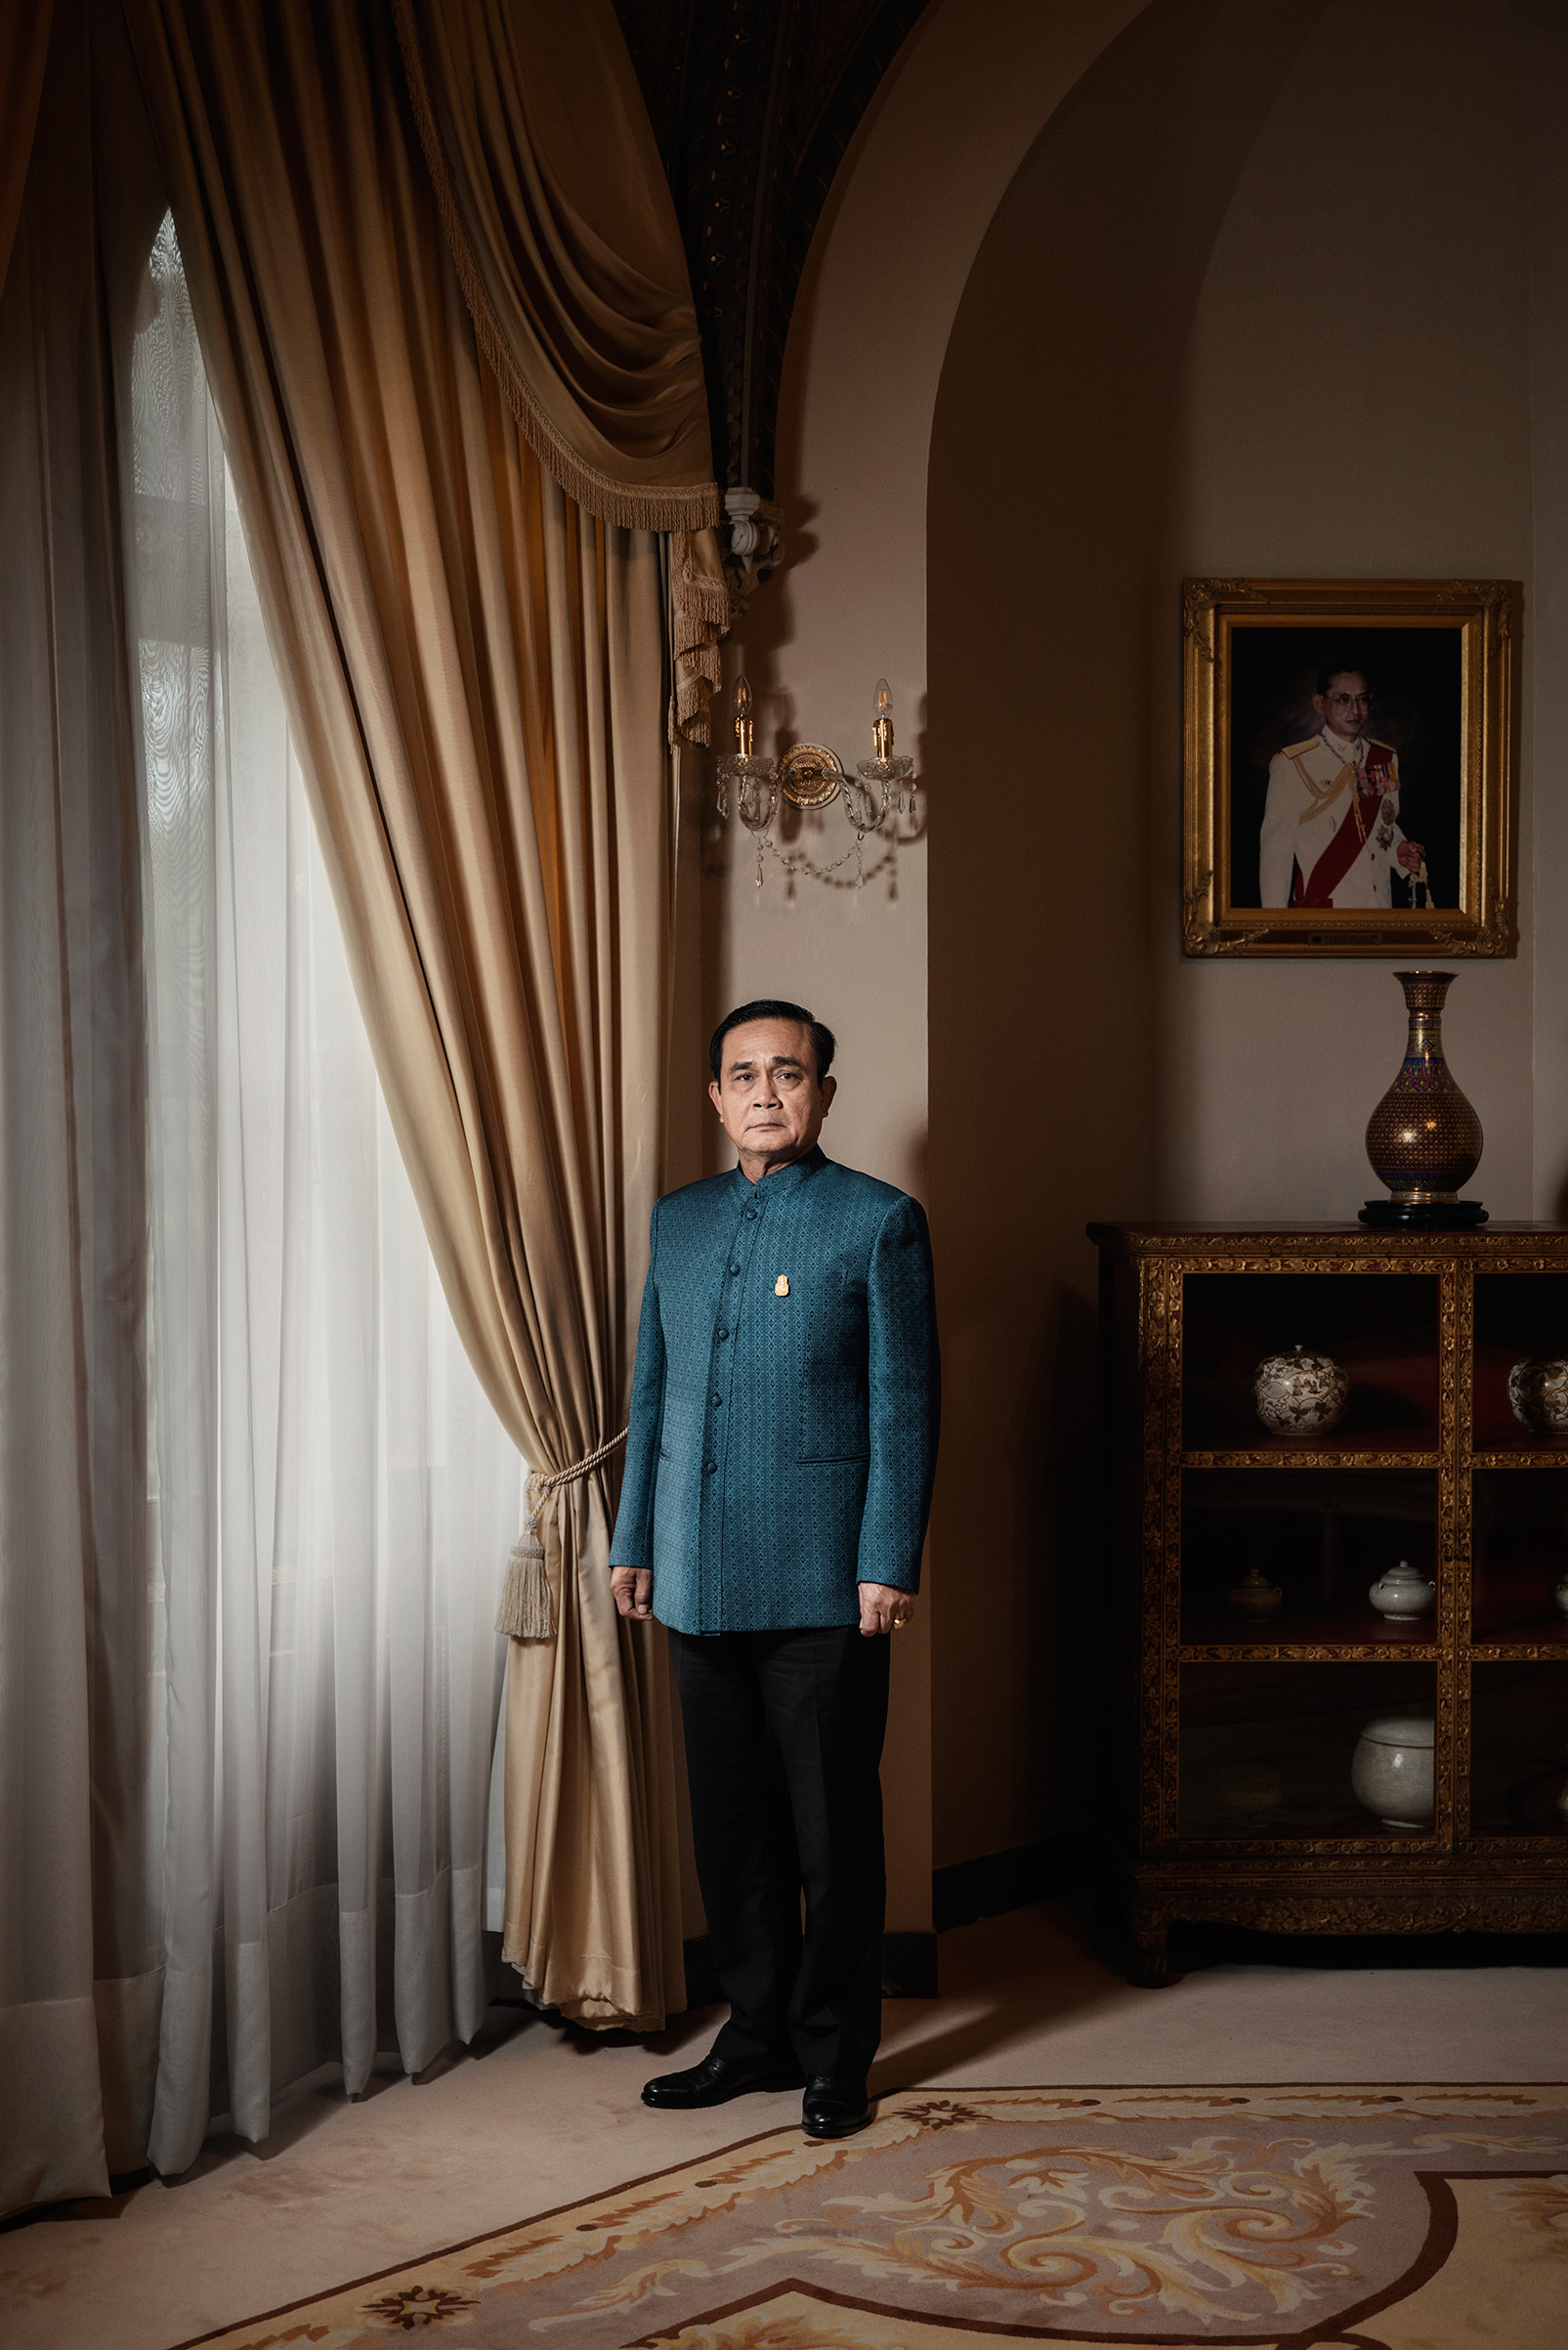 Thailand Dictator Prayuth Chan-ocha